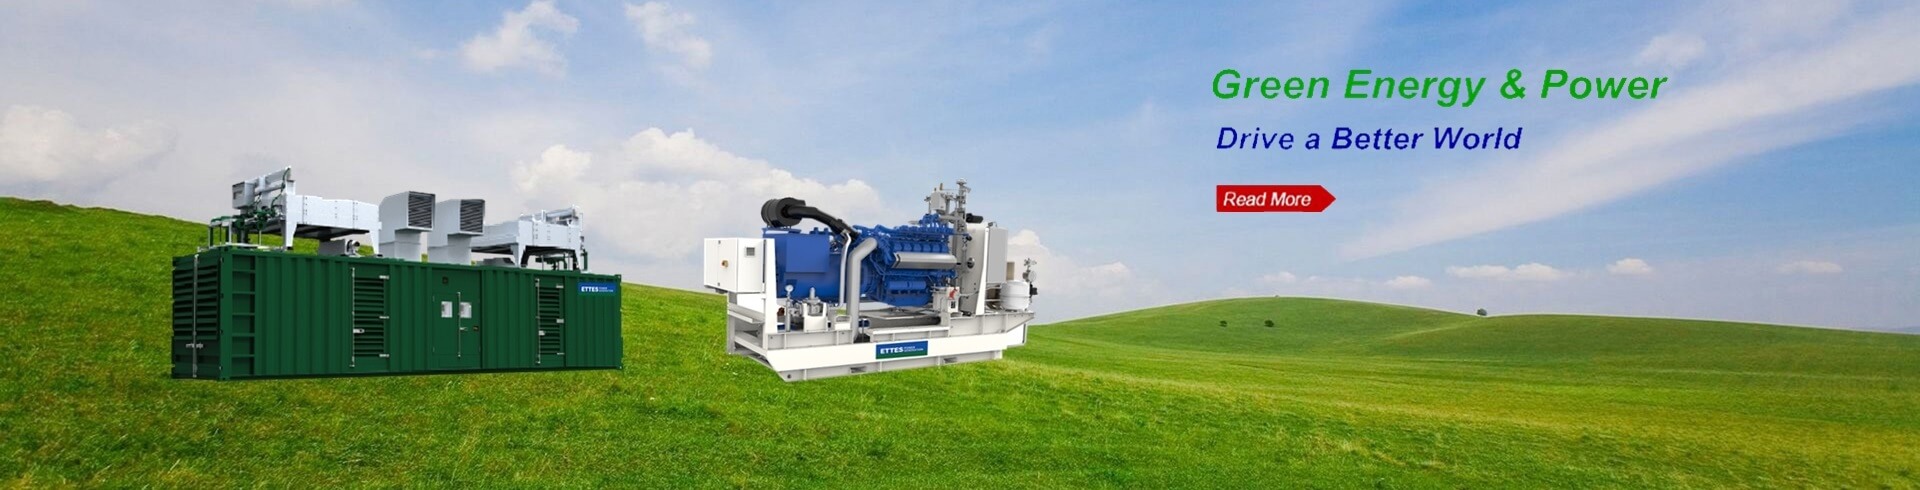 CUMMINS MWM PERKINS 200kW 500kW 1000kW biogas engine generator & CHP ETTES POWER